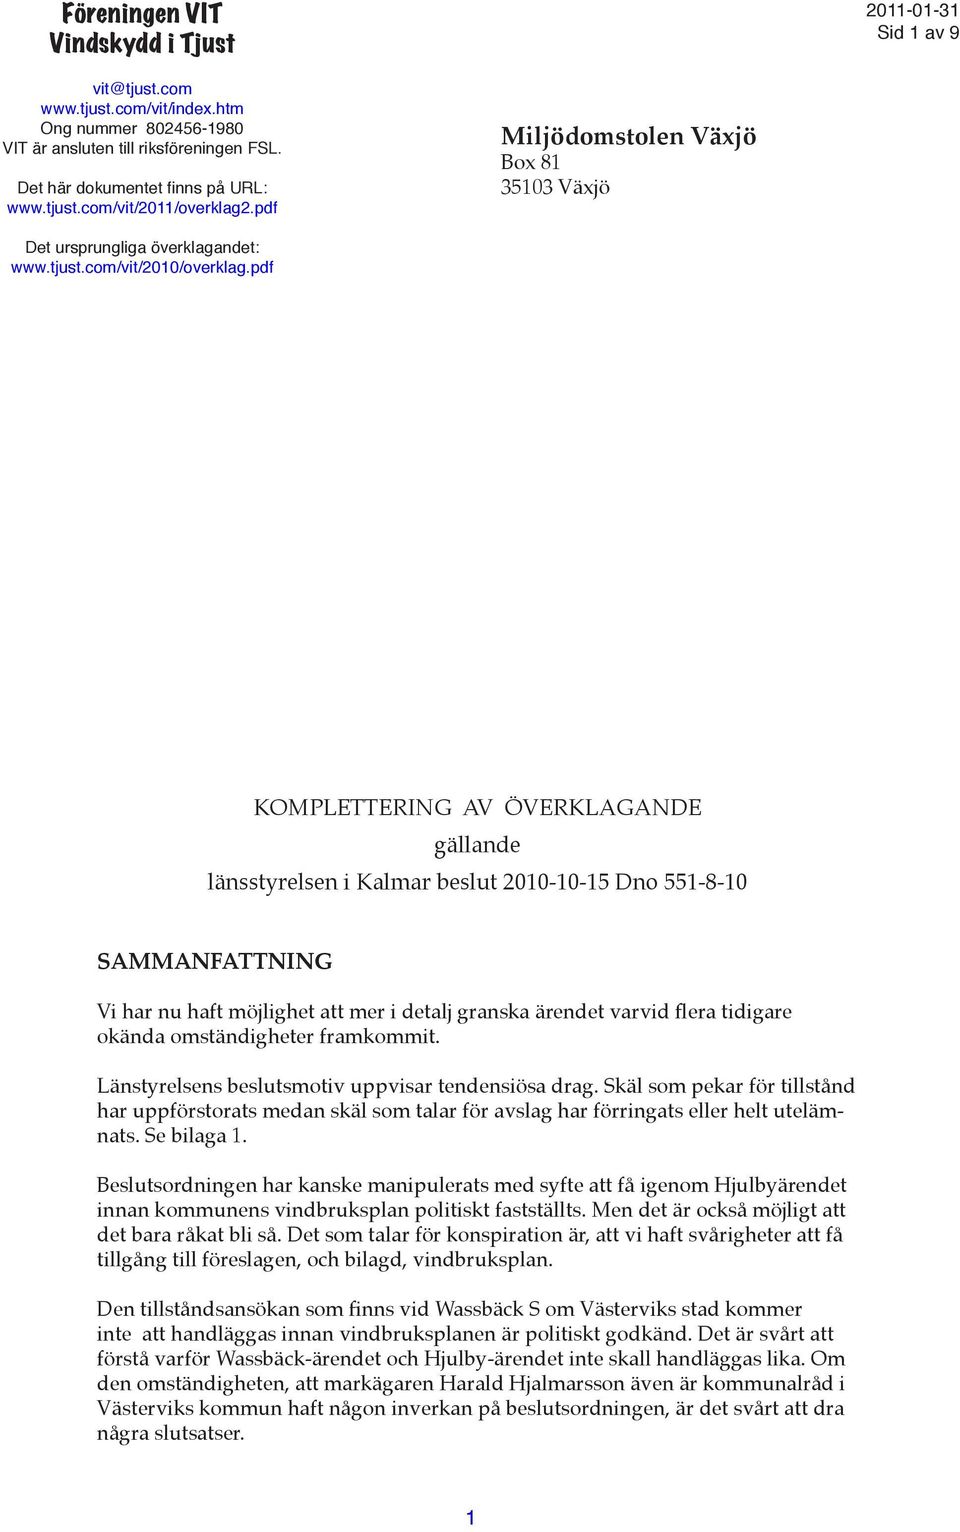 pdf KOMPLETTERING AV ÖVERKLAGANDE gällande länsstyrelsen i Kalmar beslut 2010-10-15 Dno 551-8-10 SAMMANFATTNING Vi har nu haft möjlighet att mer i detalj granska ärendet varvid flera tidigare okända